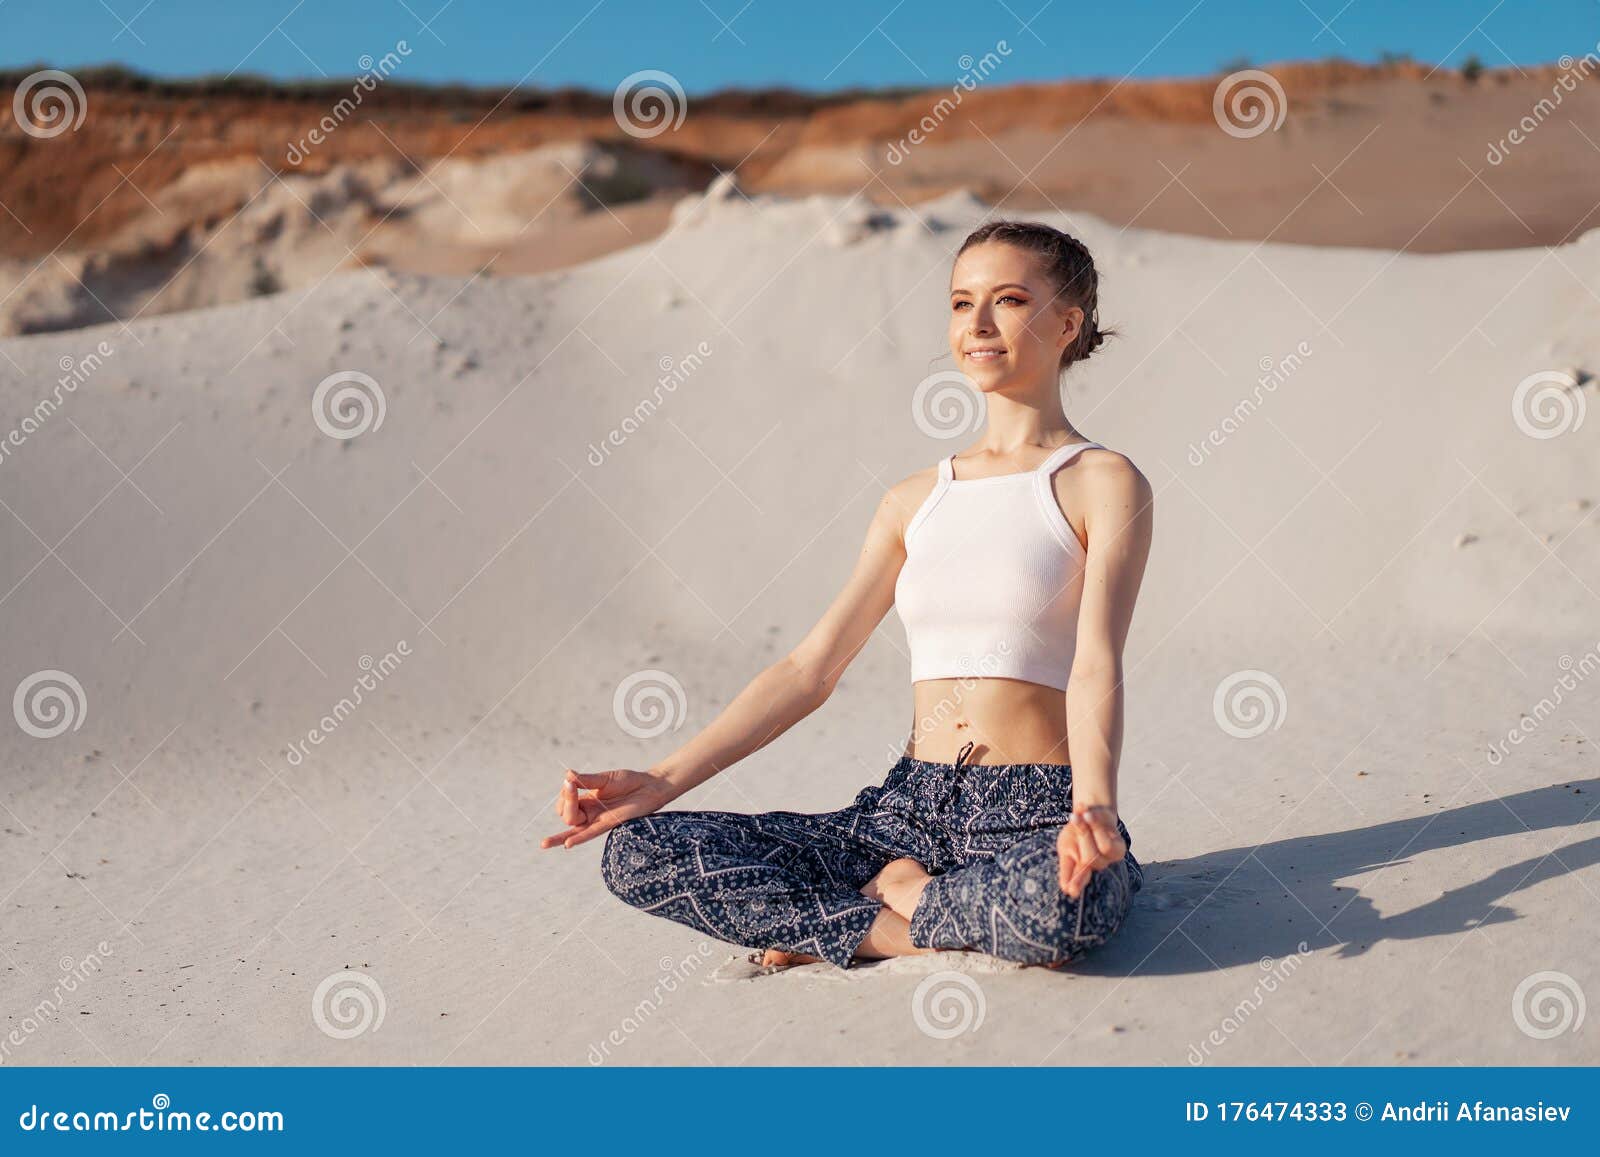 一个白色上衣 宽裤的白人少女 坐在沙滩上的荷花位置库存图片 图片包括有人员 和平 成人 本质